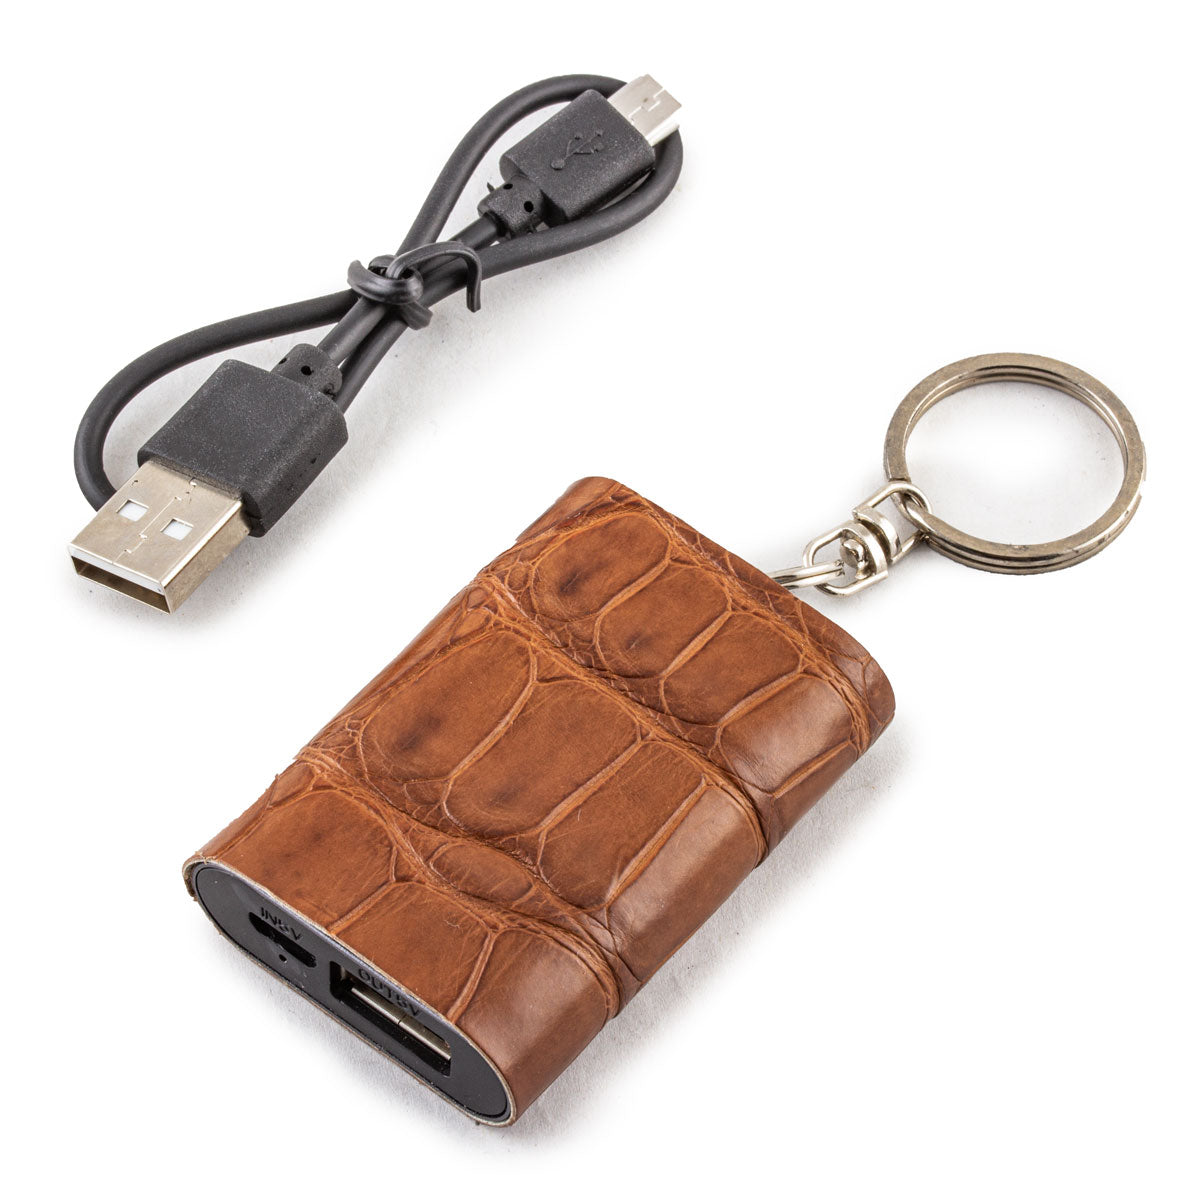 Mini Powerbank / batterie externe - Porte-clé - Alligator - Chargeur universel iPhone , Samsung , smartphone, tablette... ( noir, marron, gris)